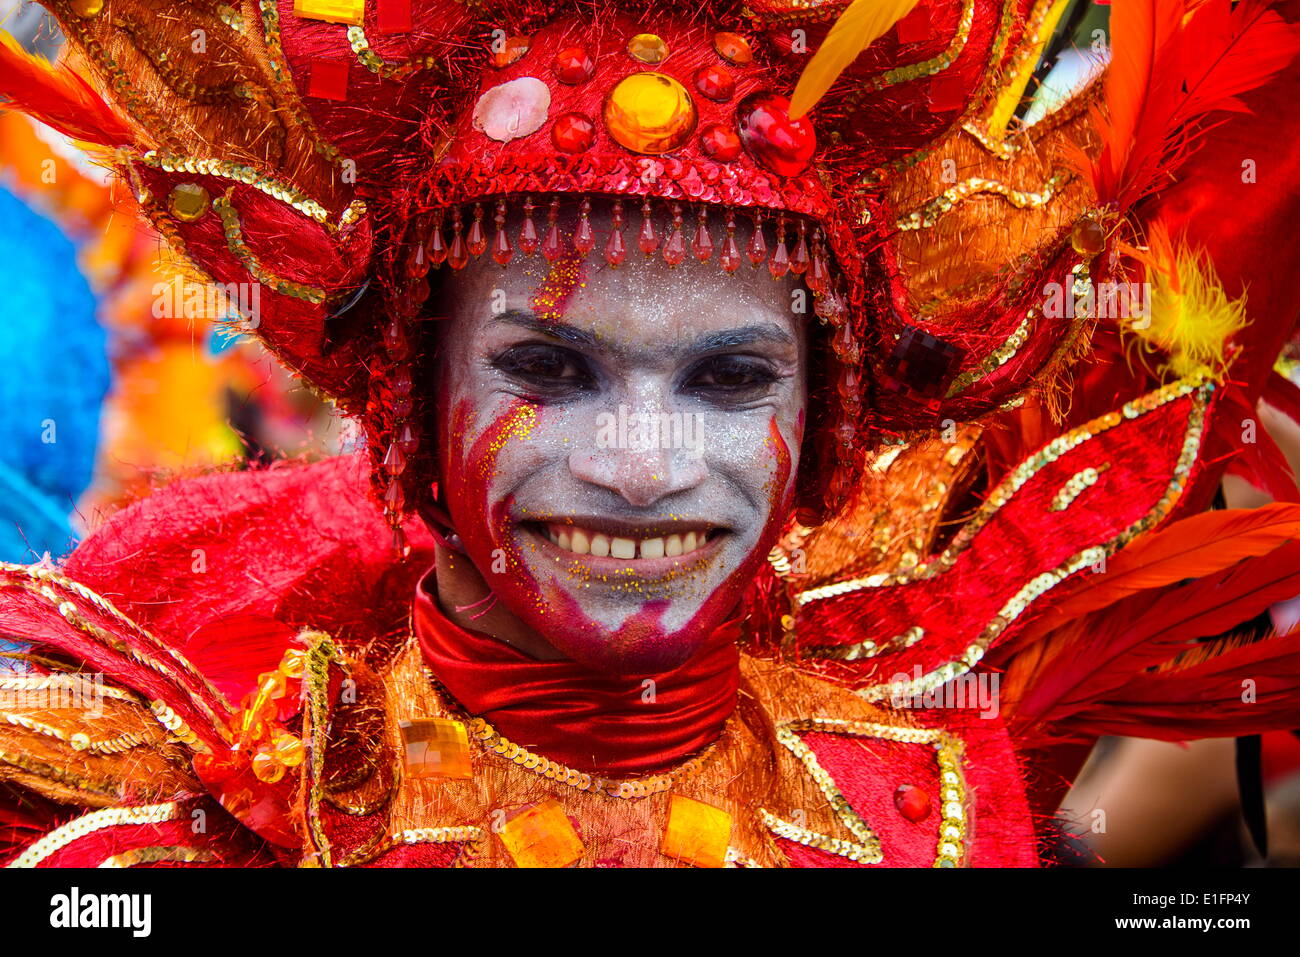 L'homme vêtu de couleurs vives, Carneval à Santo Domingo, République dominicaine, Antilles, Caraïbes, Amérique Centrale Banque D'Images